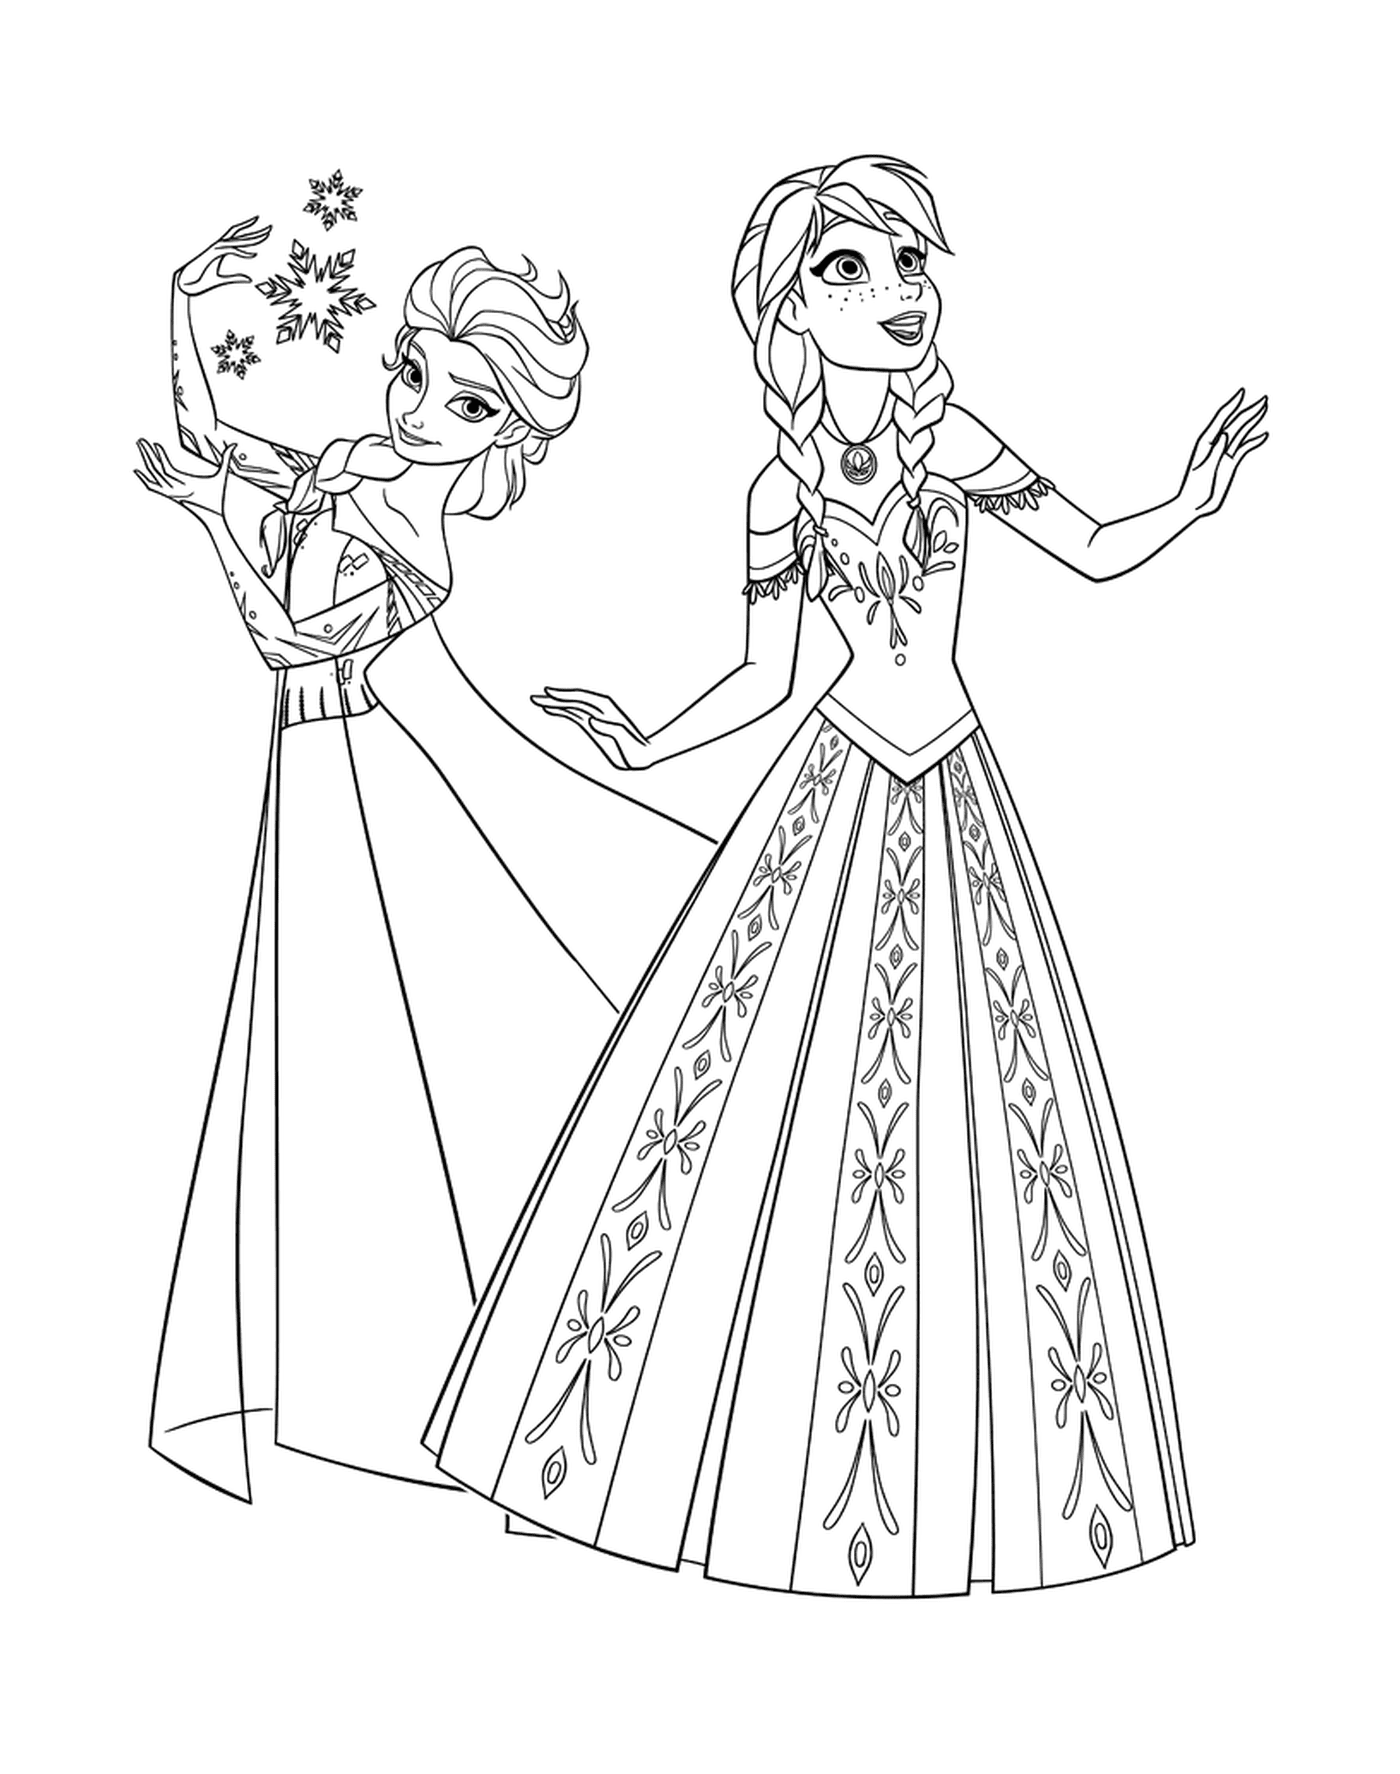   Anna et Elsa, princesses de La Reine des Neiges 